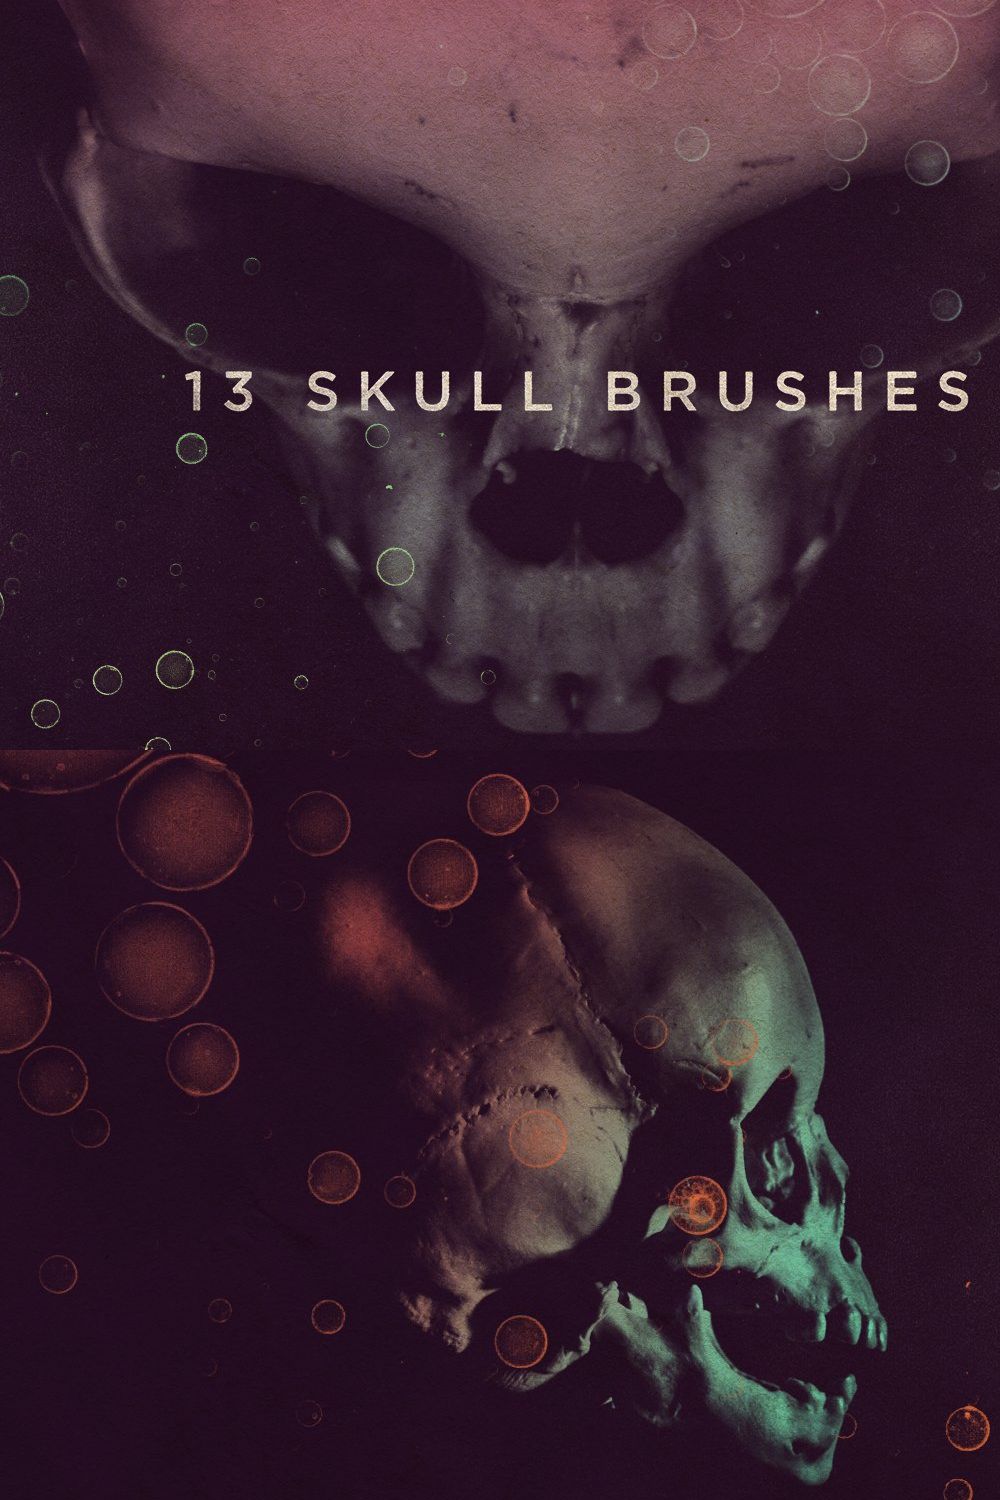 Skull Brushes pinterest preview image.